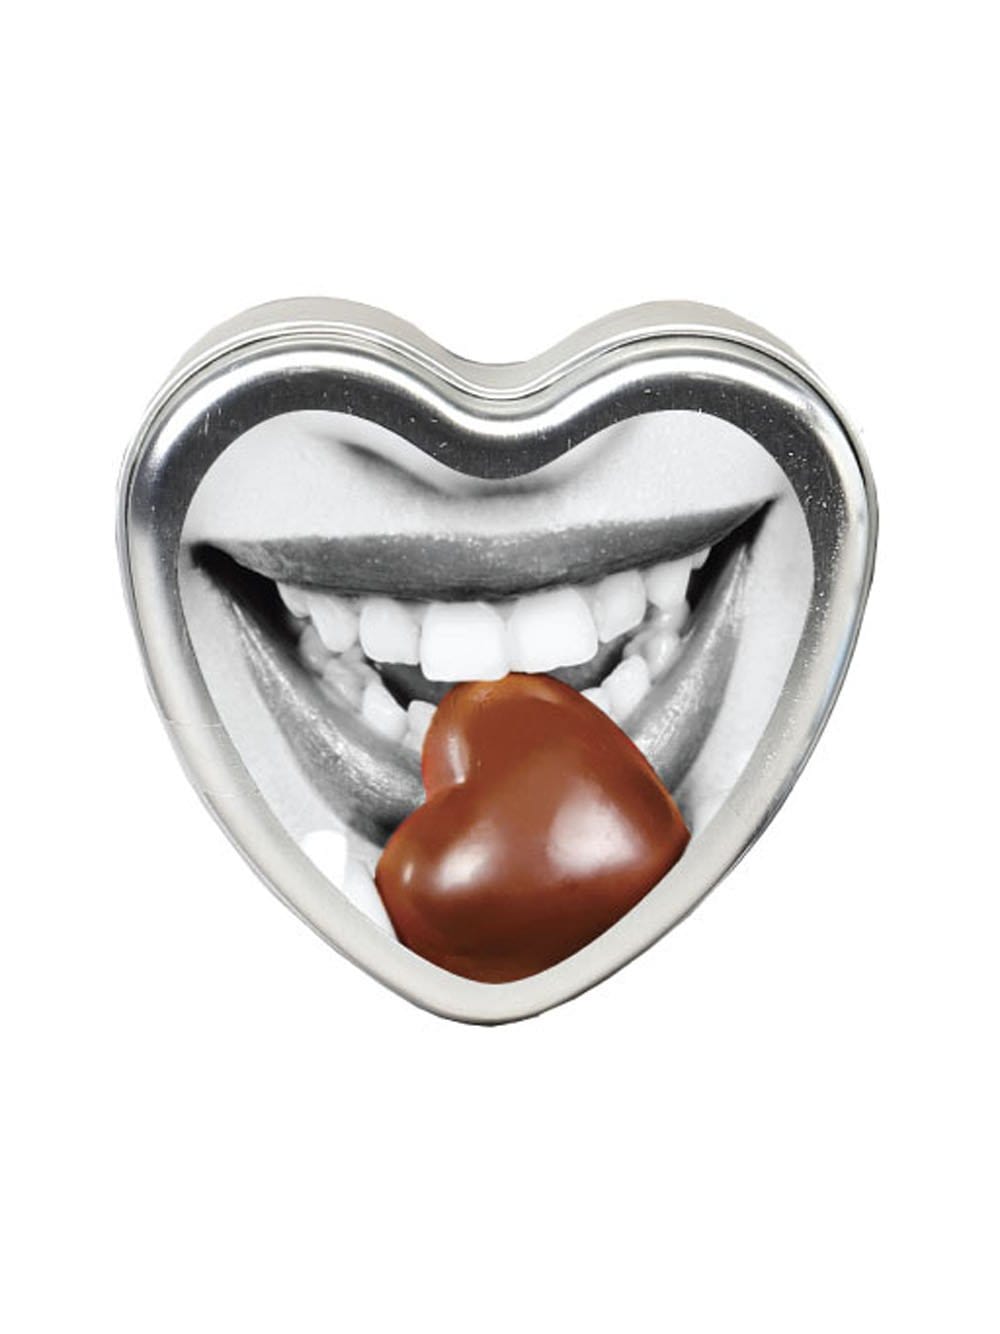 edible heart cande chocolate 4 oz